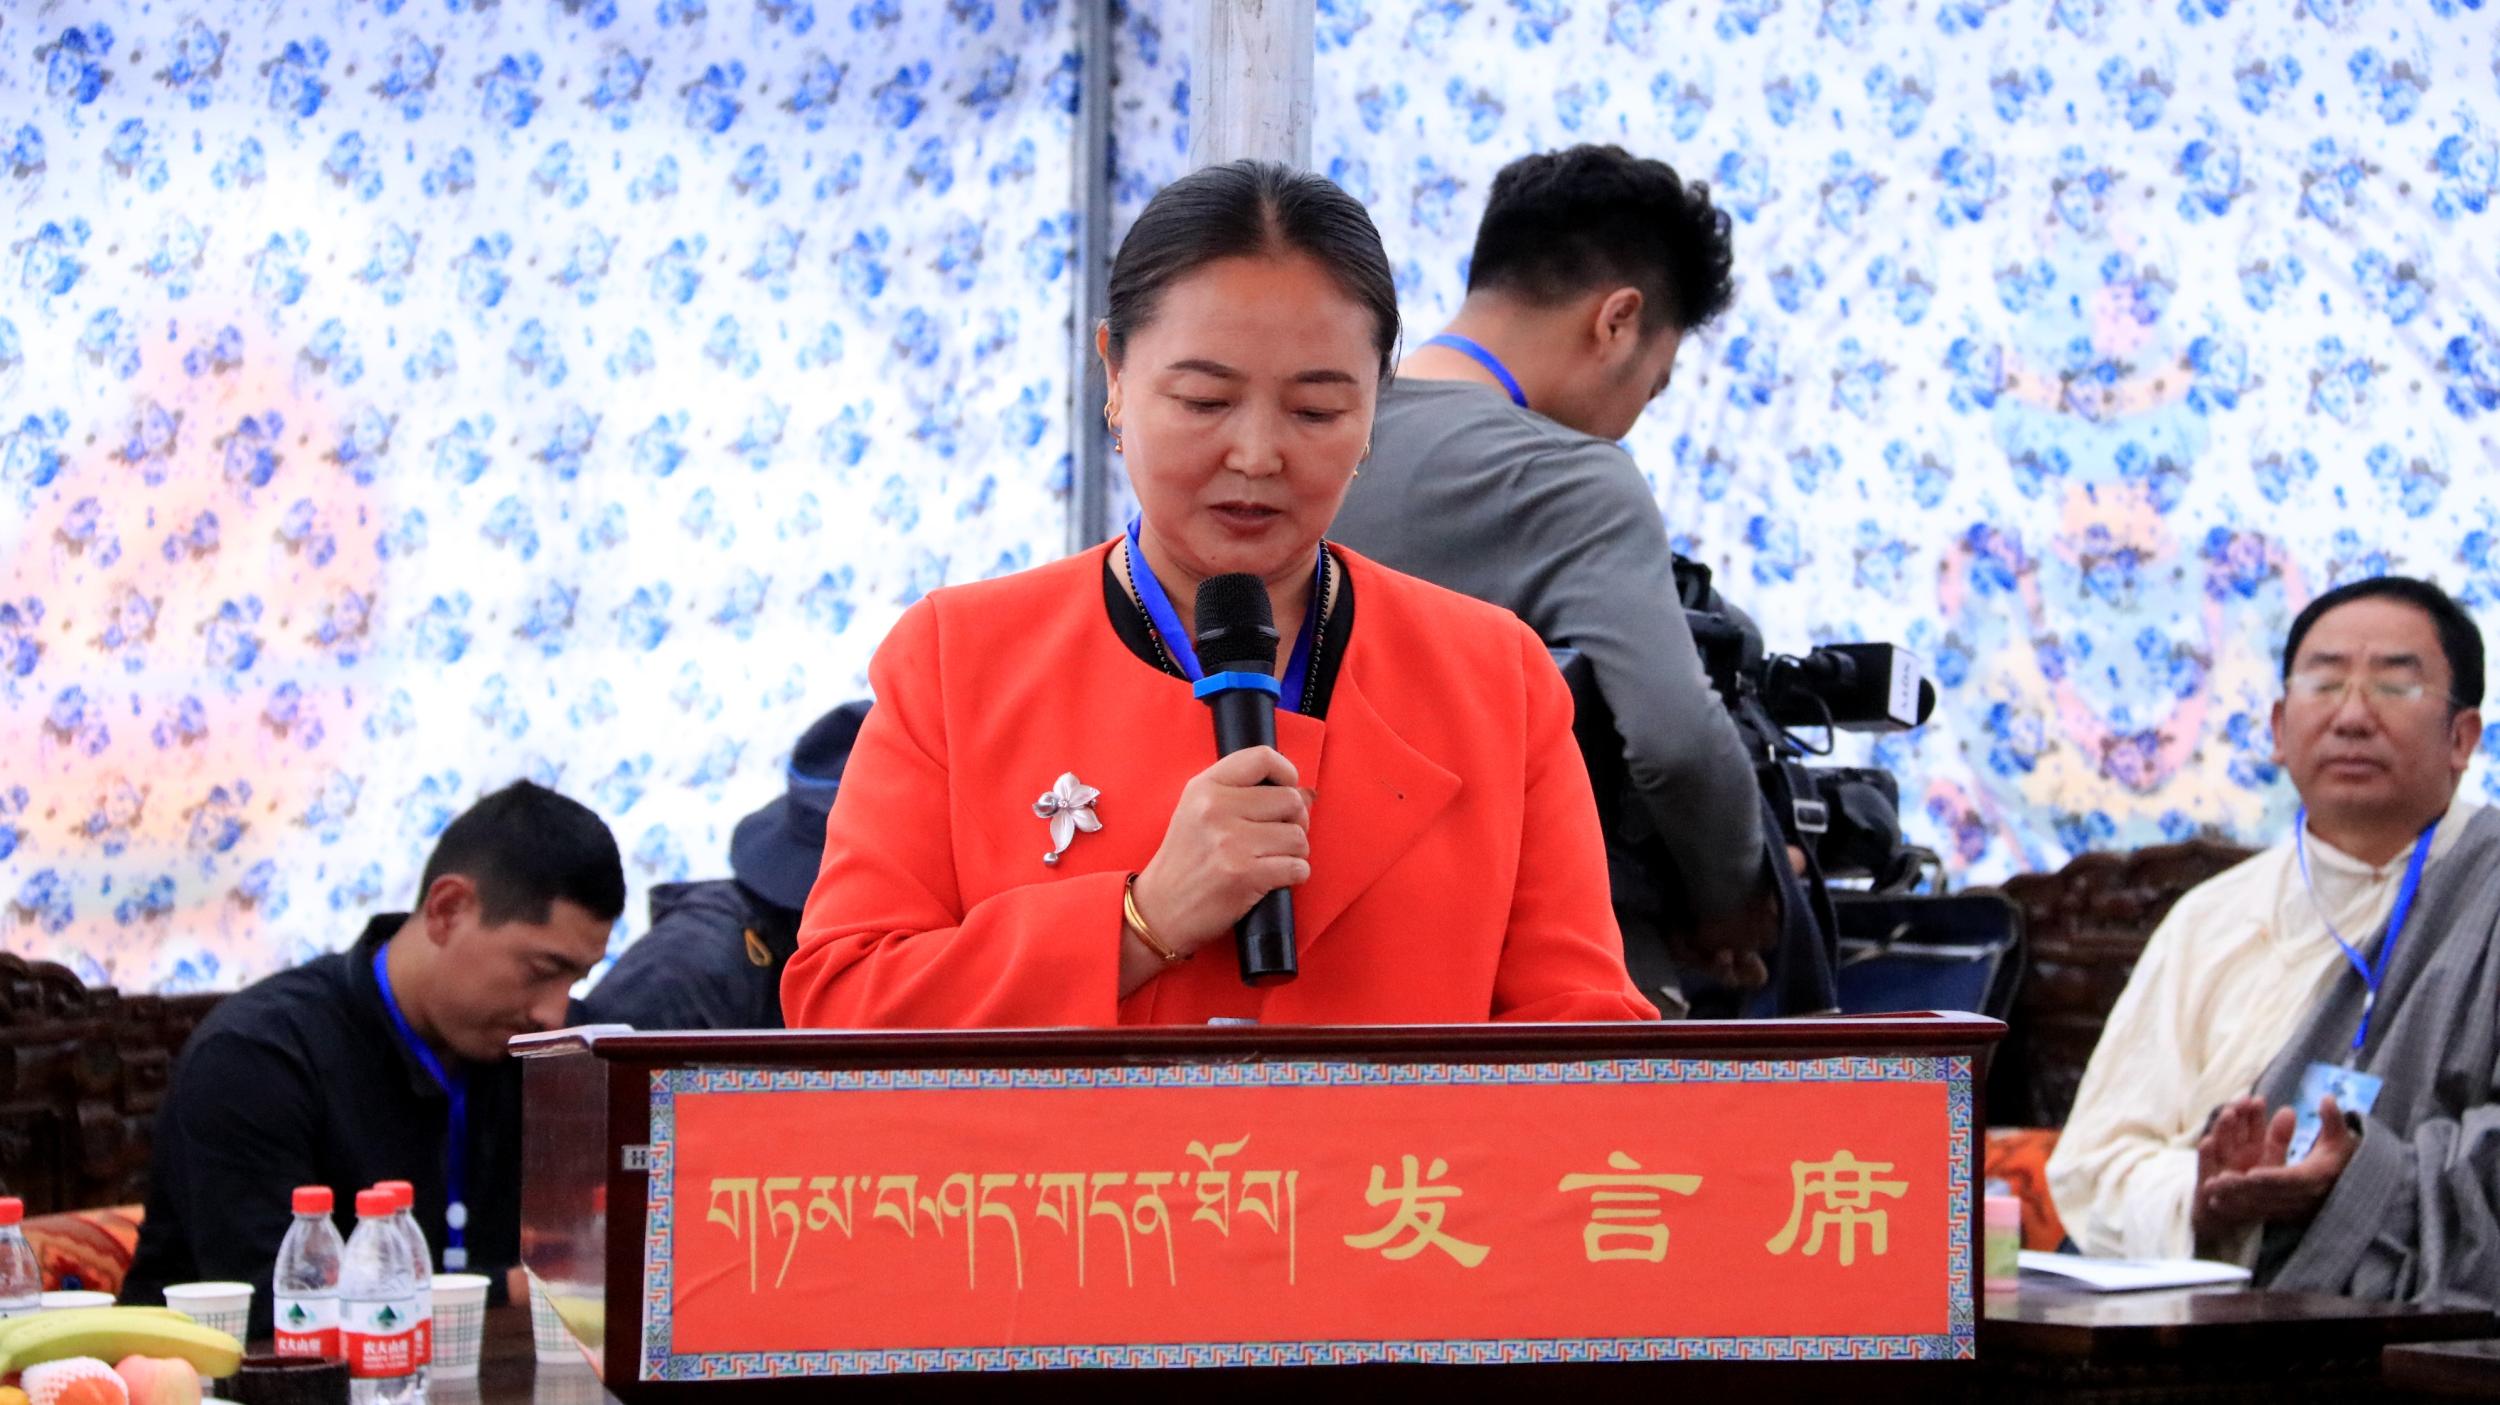 中国囊谦首届达那格萨尔文化研讨会隆重开幕